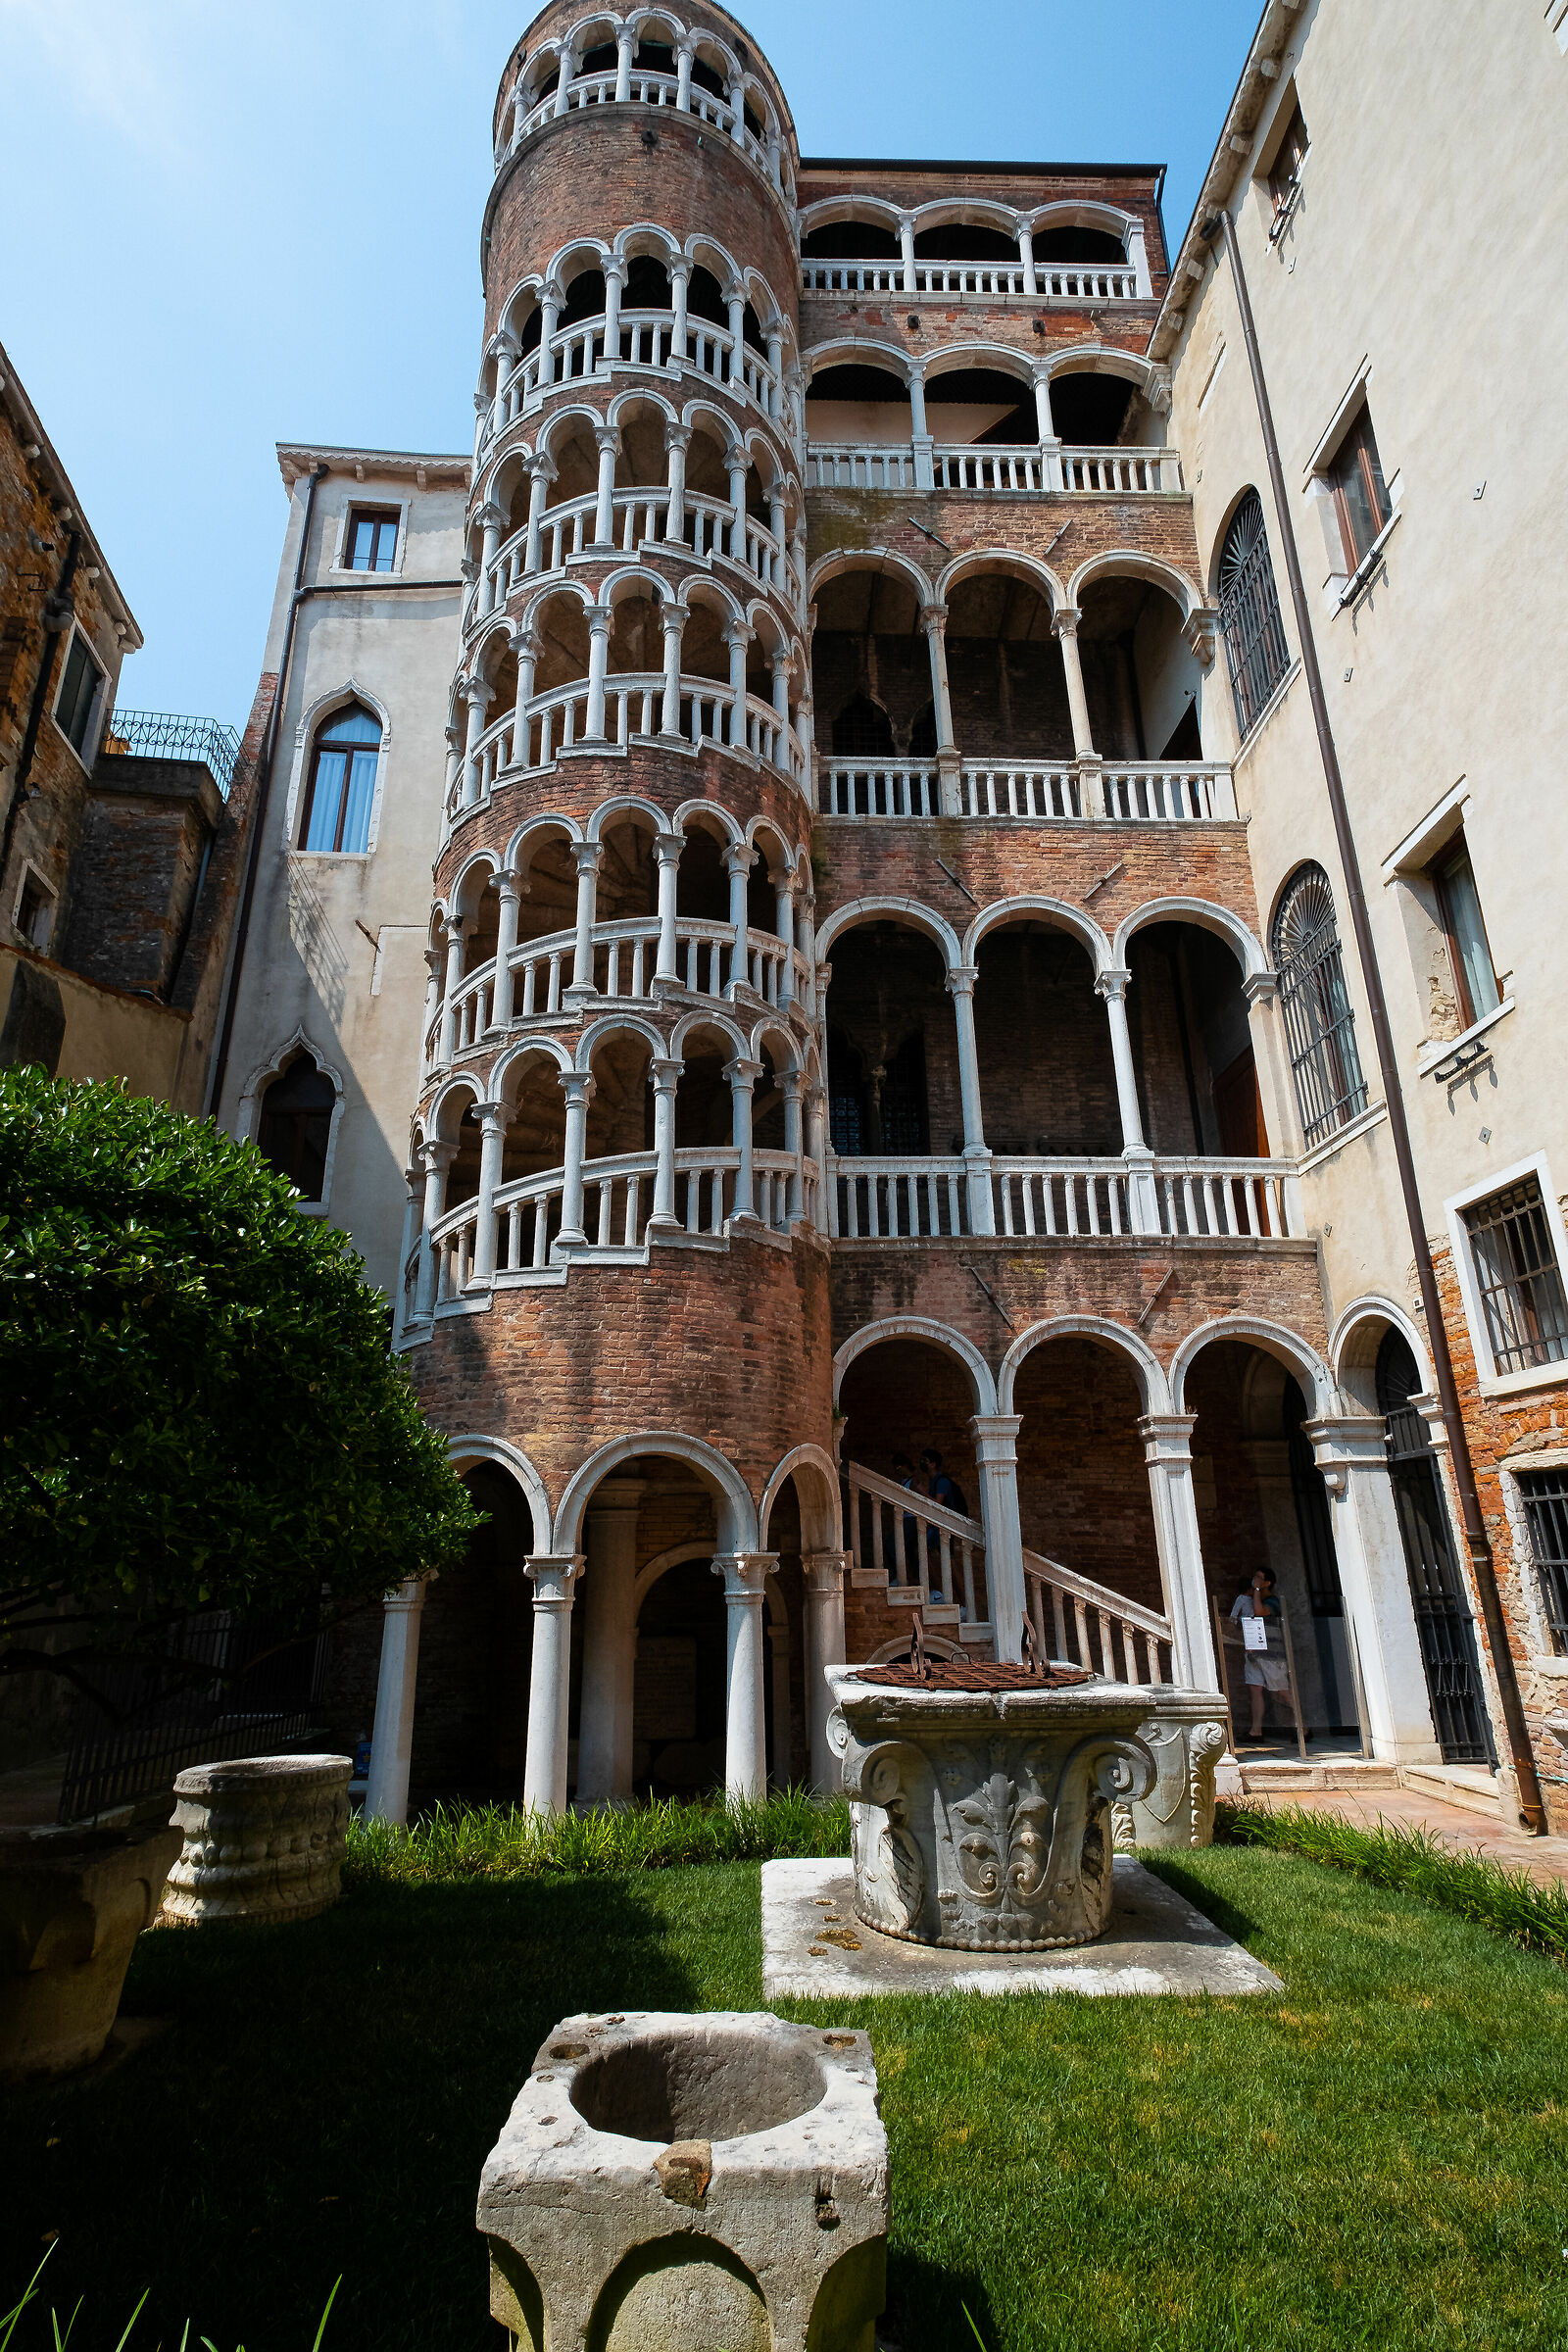 Contanarini del Bovolo Venice scale...